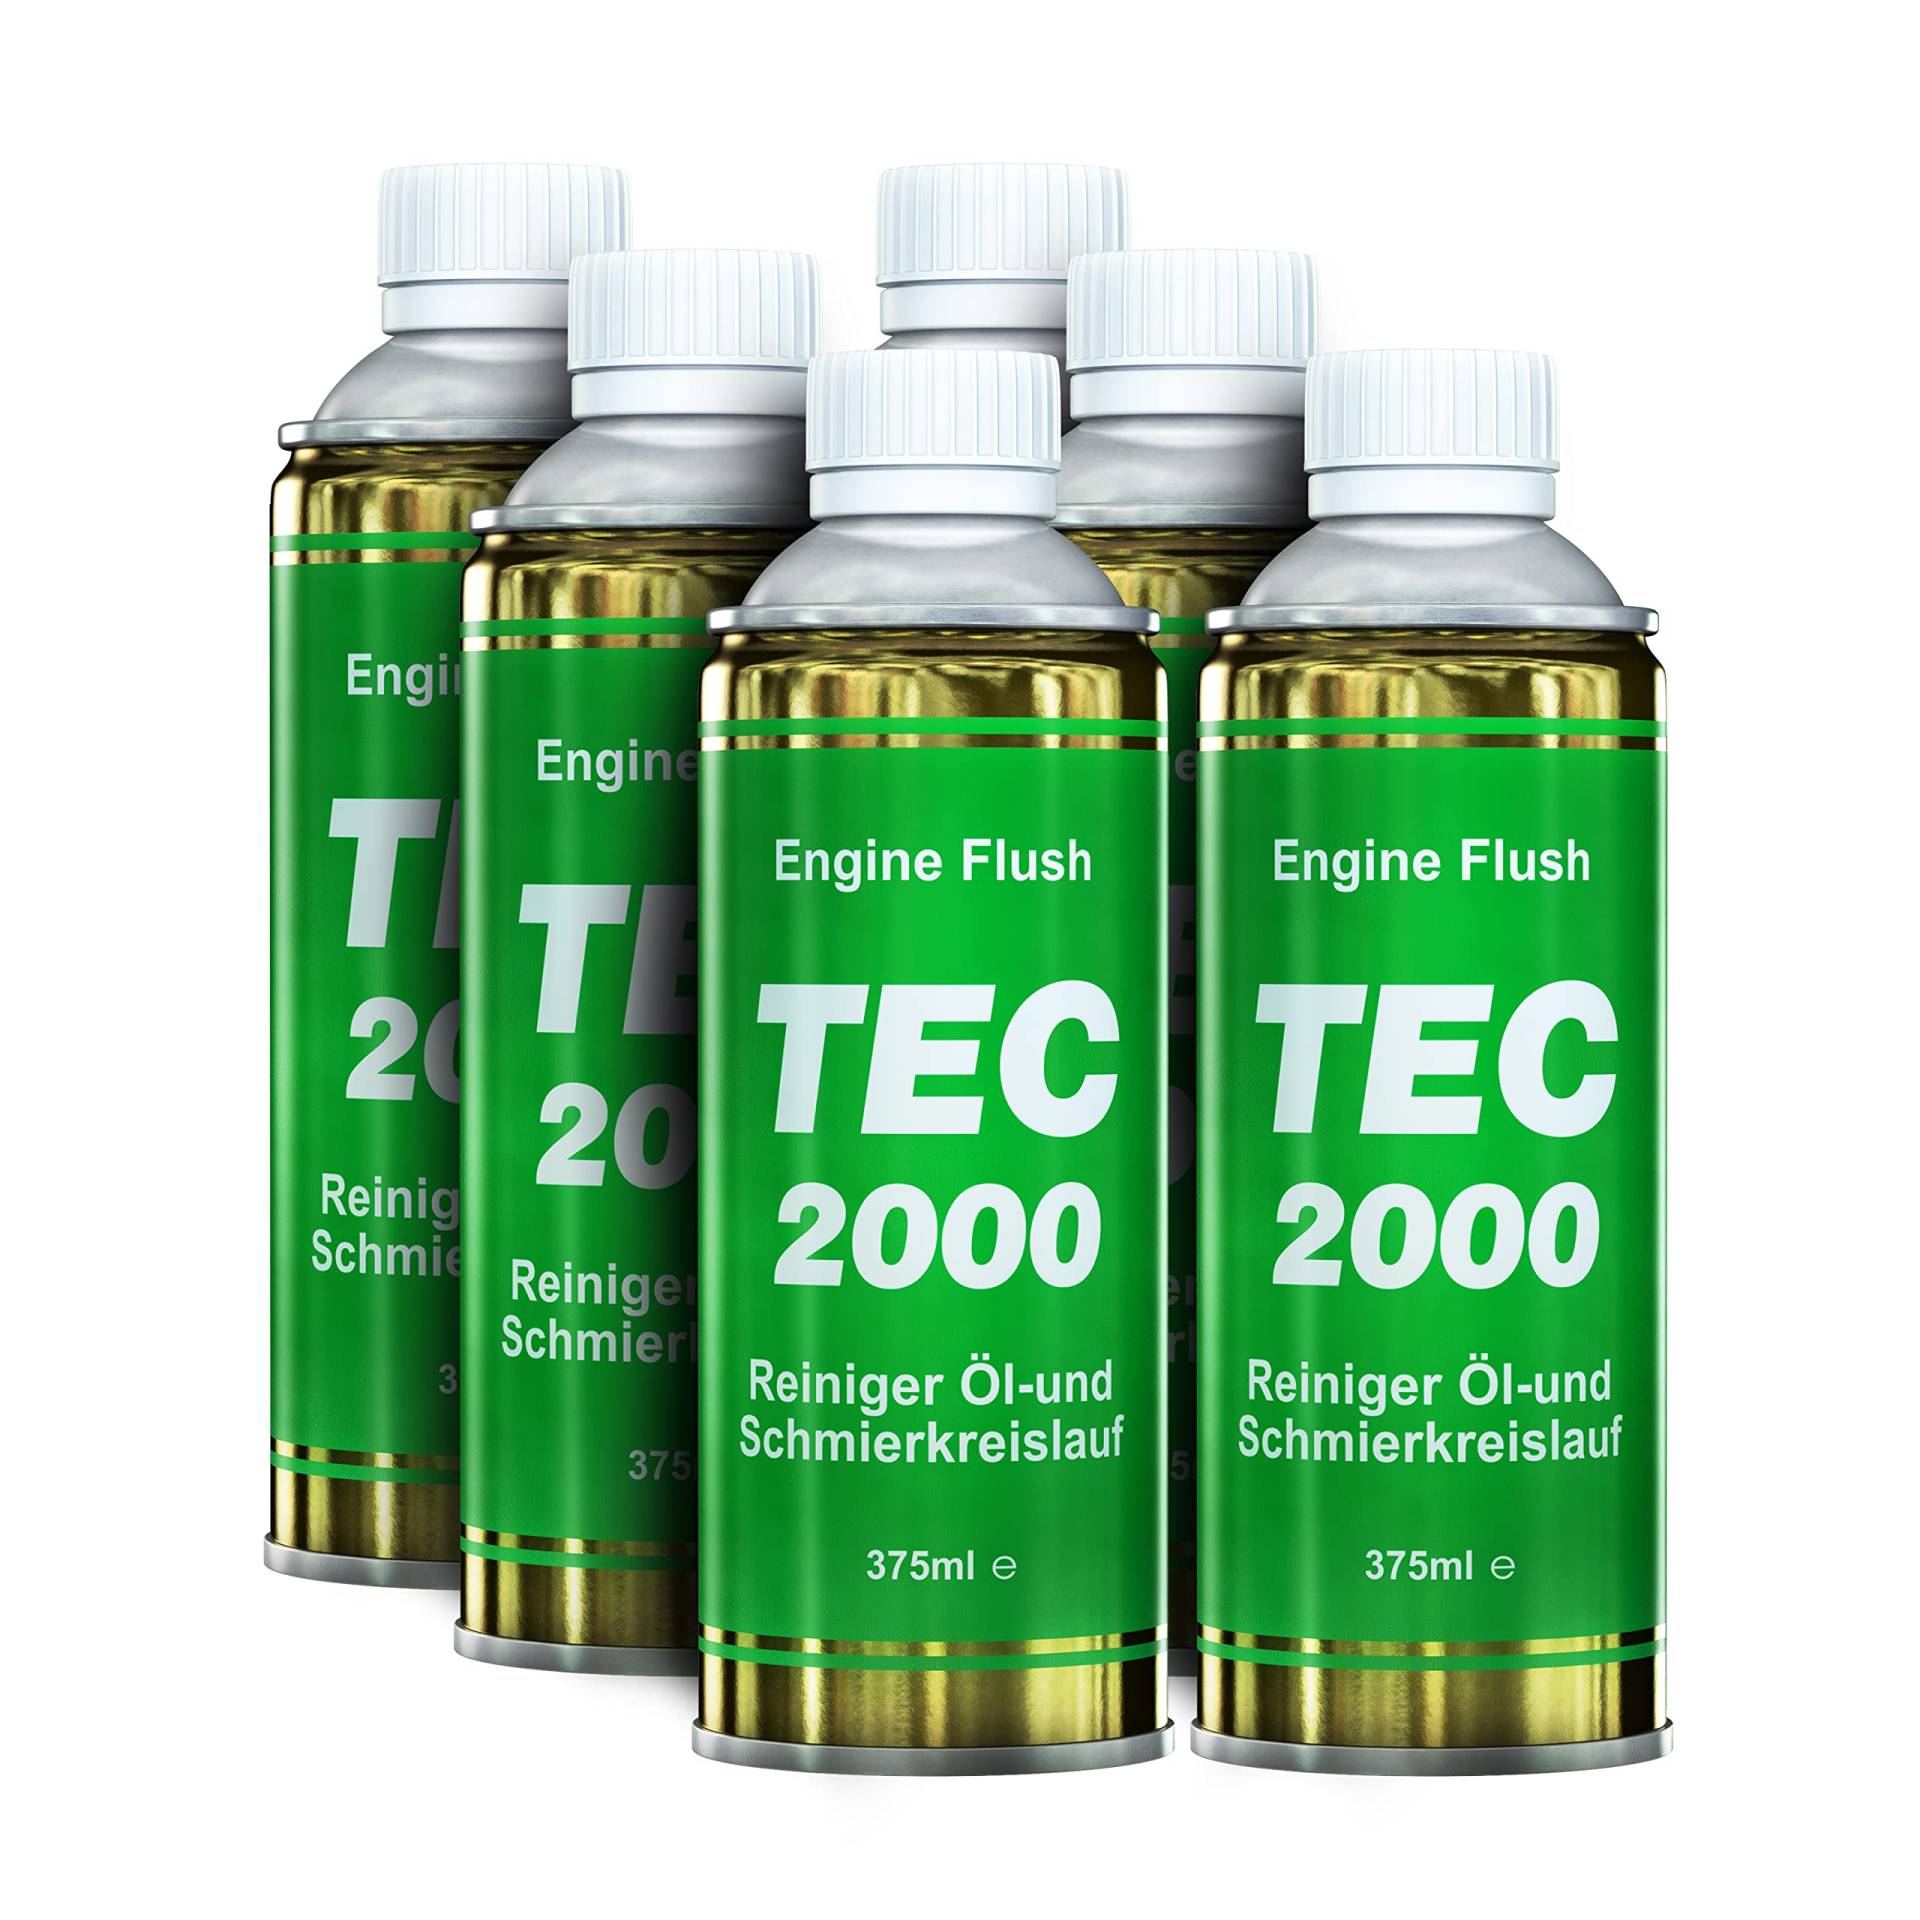 TEC 2000 Motorspülung - 6 x Engine Flush Motorreiniger für Benzin Diesel oder Gasmotoren 375ml Set - Kraftstoffadditiv zur Systemreinigung - Motorpflege Zusatz von TEC 2000